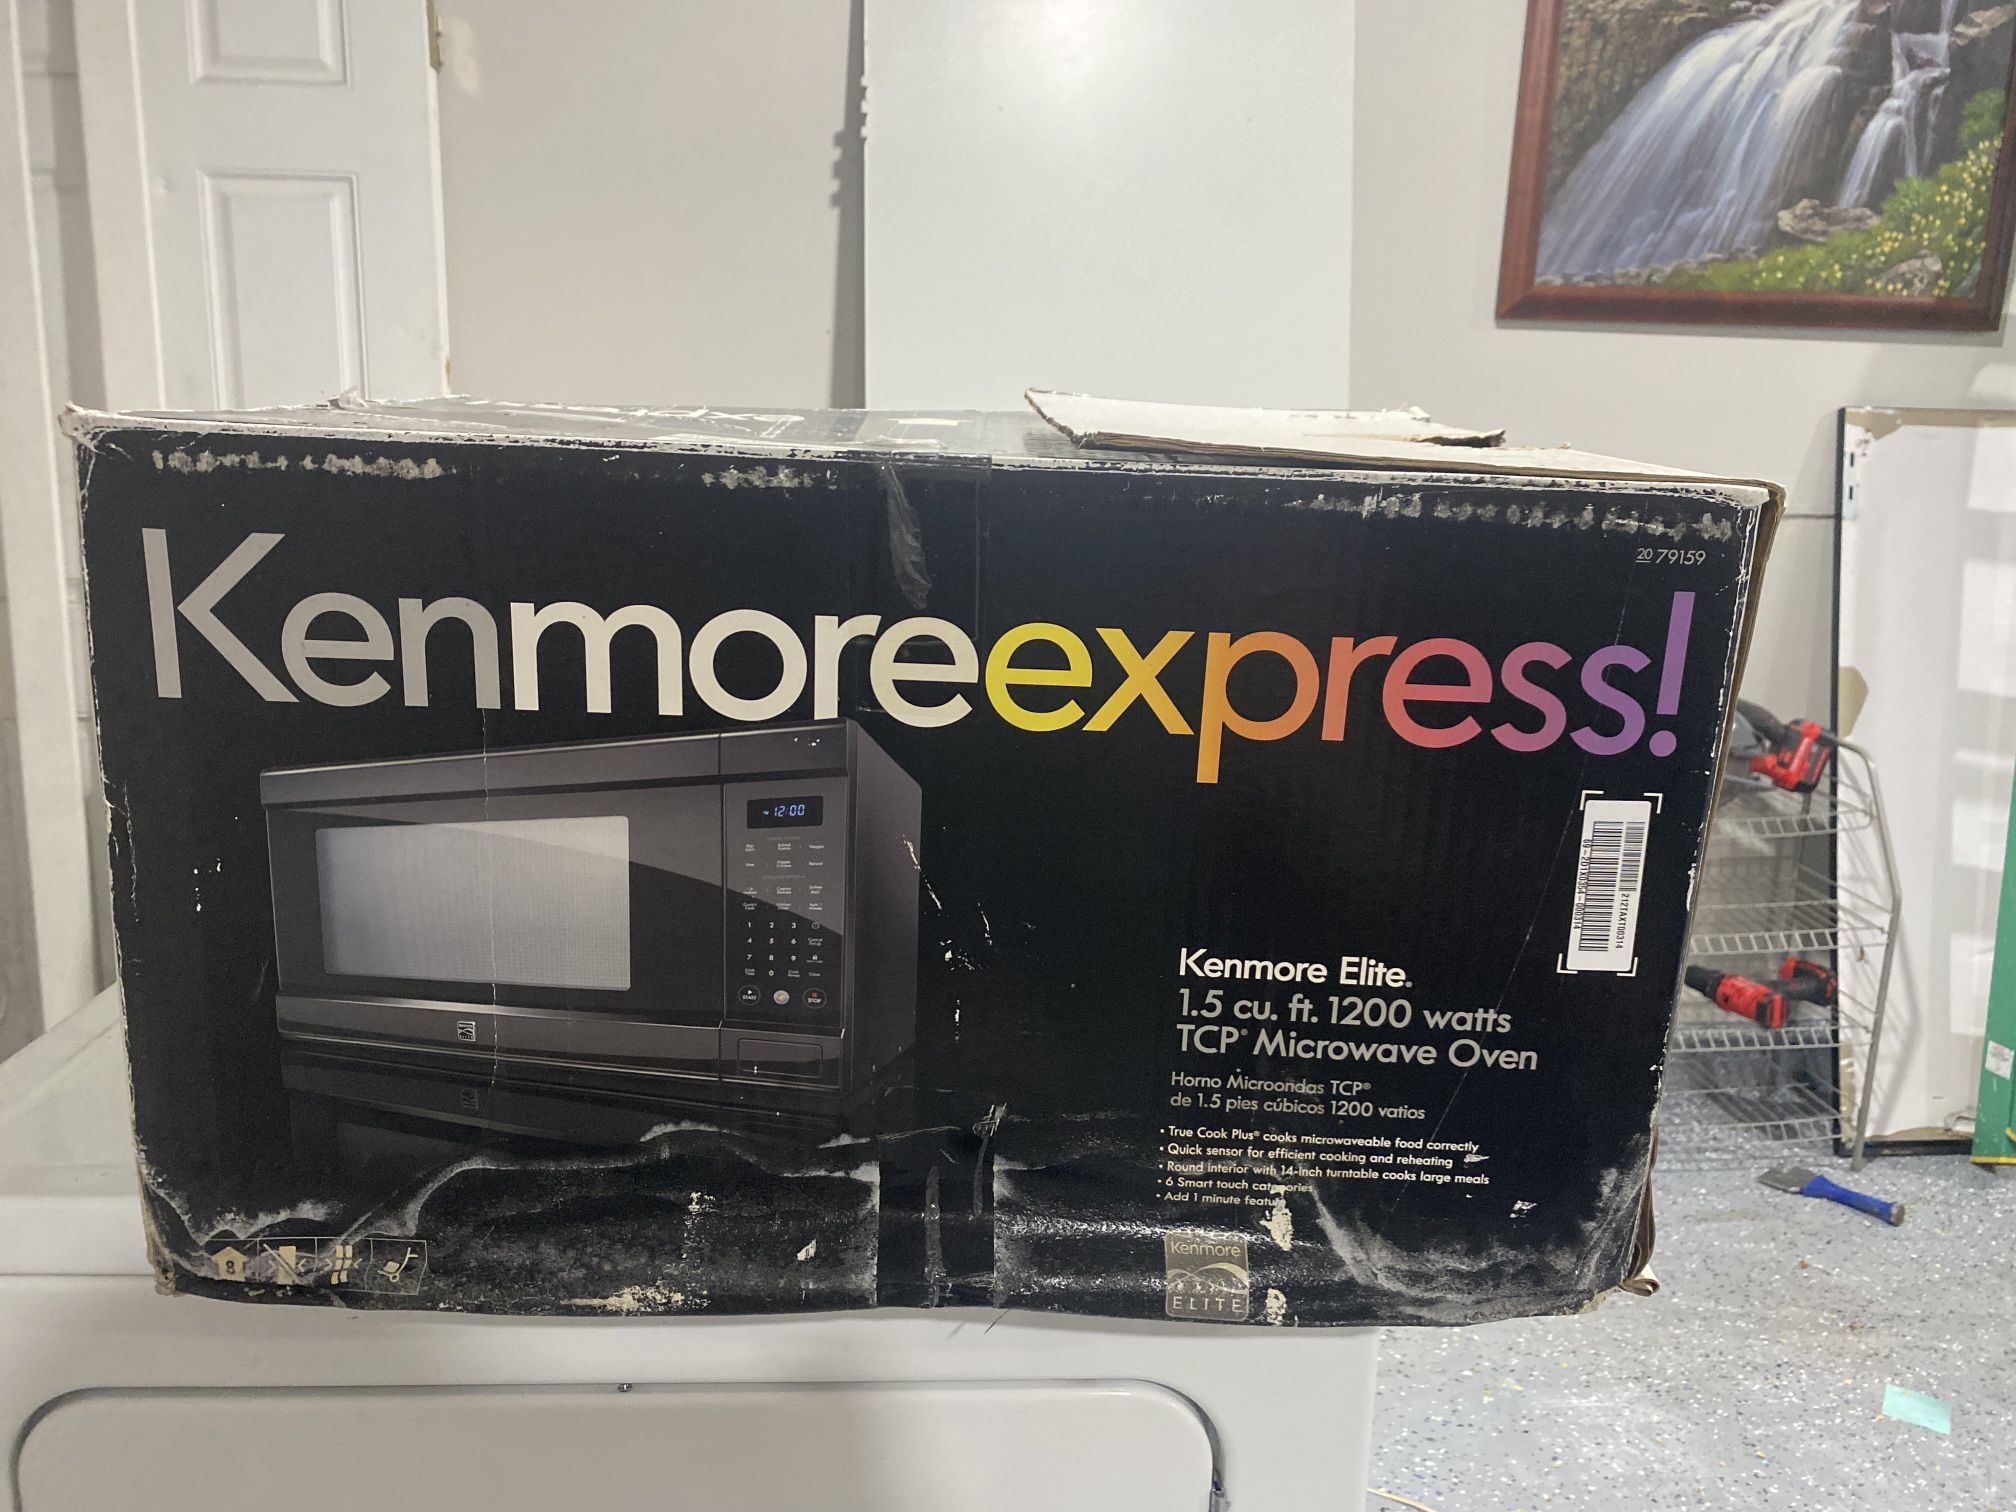 Kenmoreexpress! Microwave